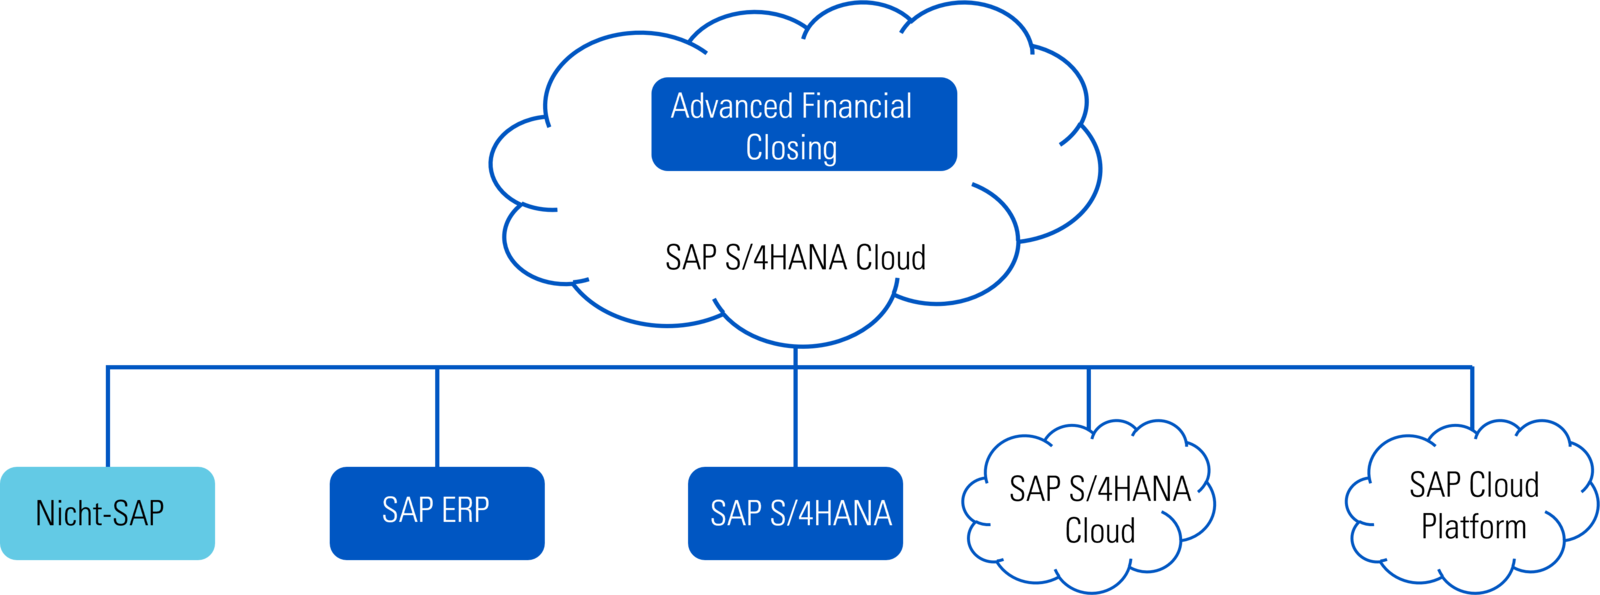 SAP S/4HANA Cloud: Advanced Financial Closing